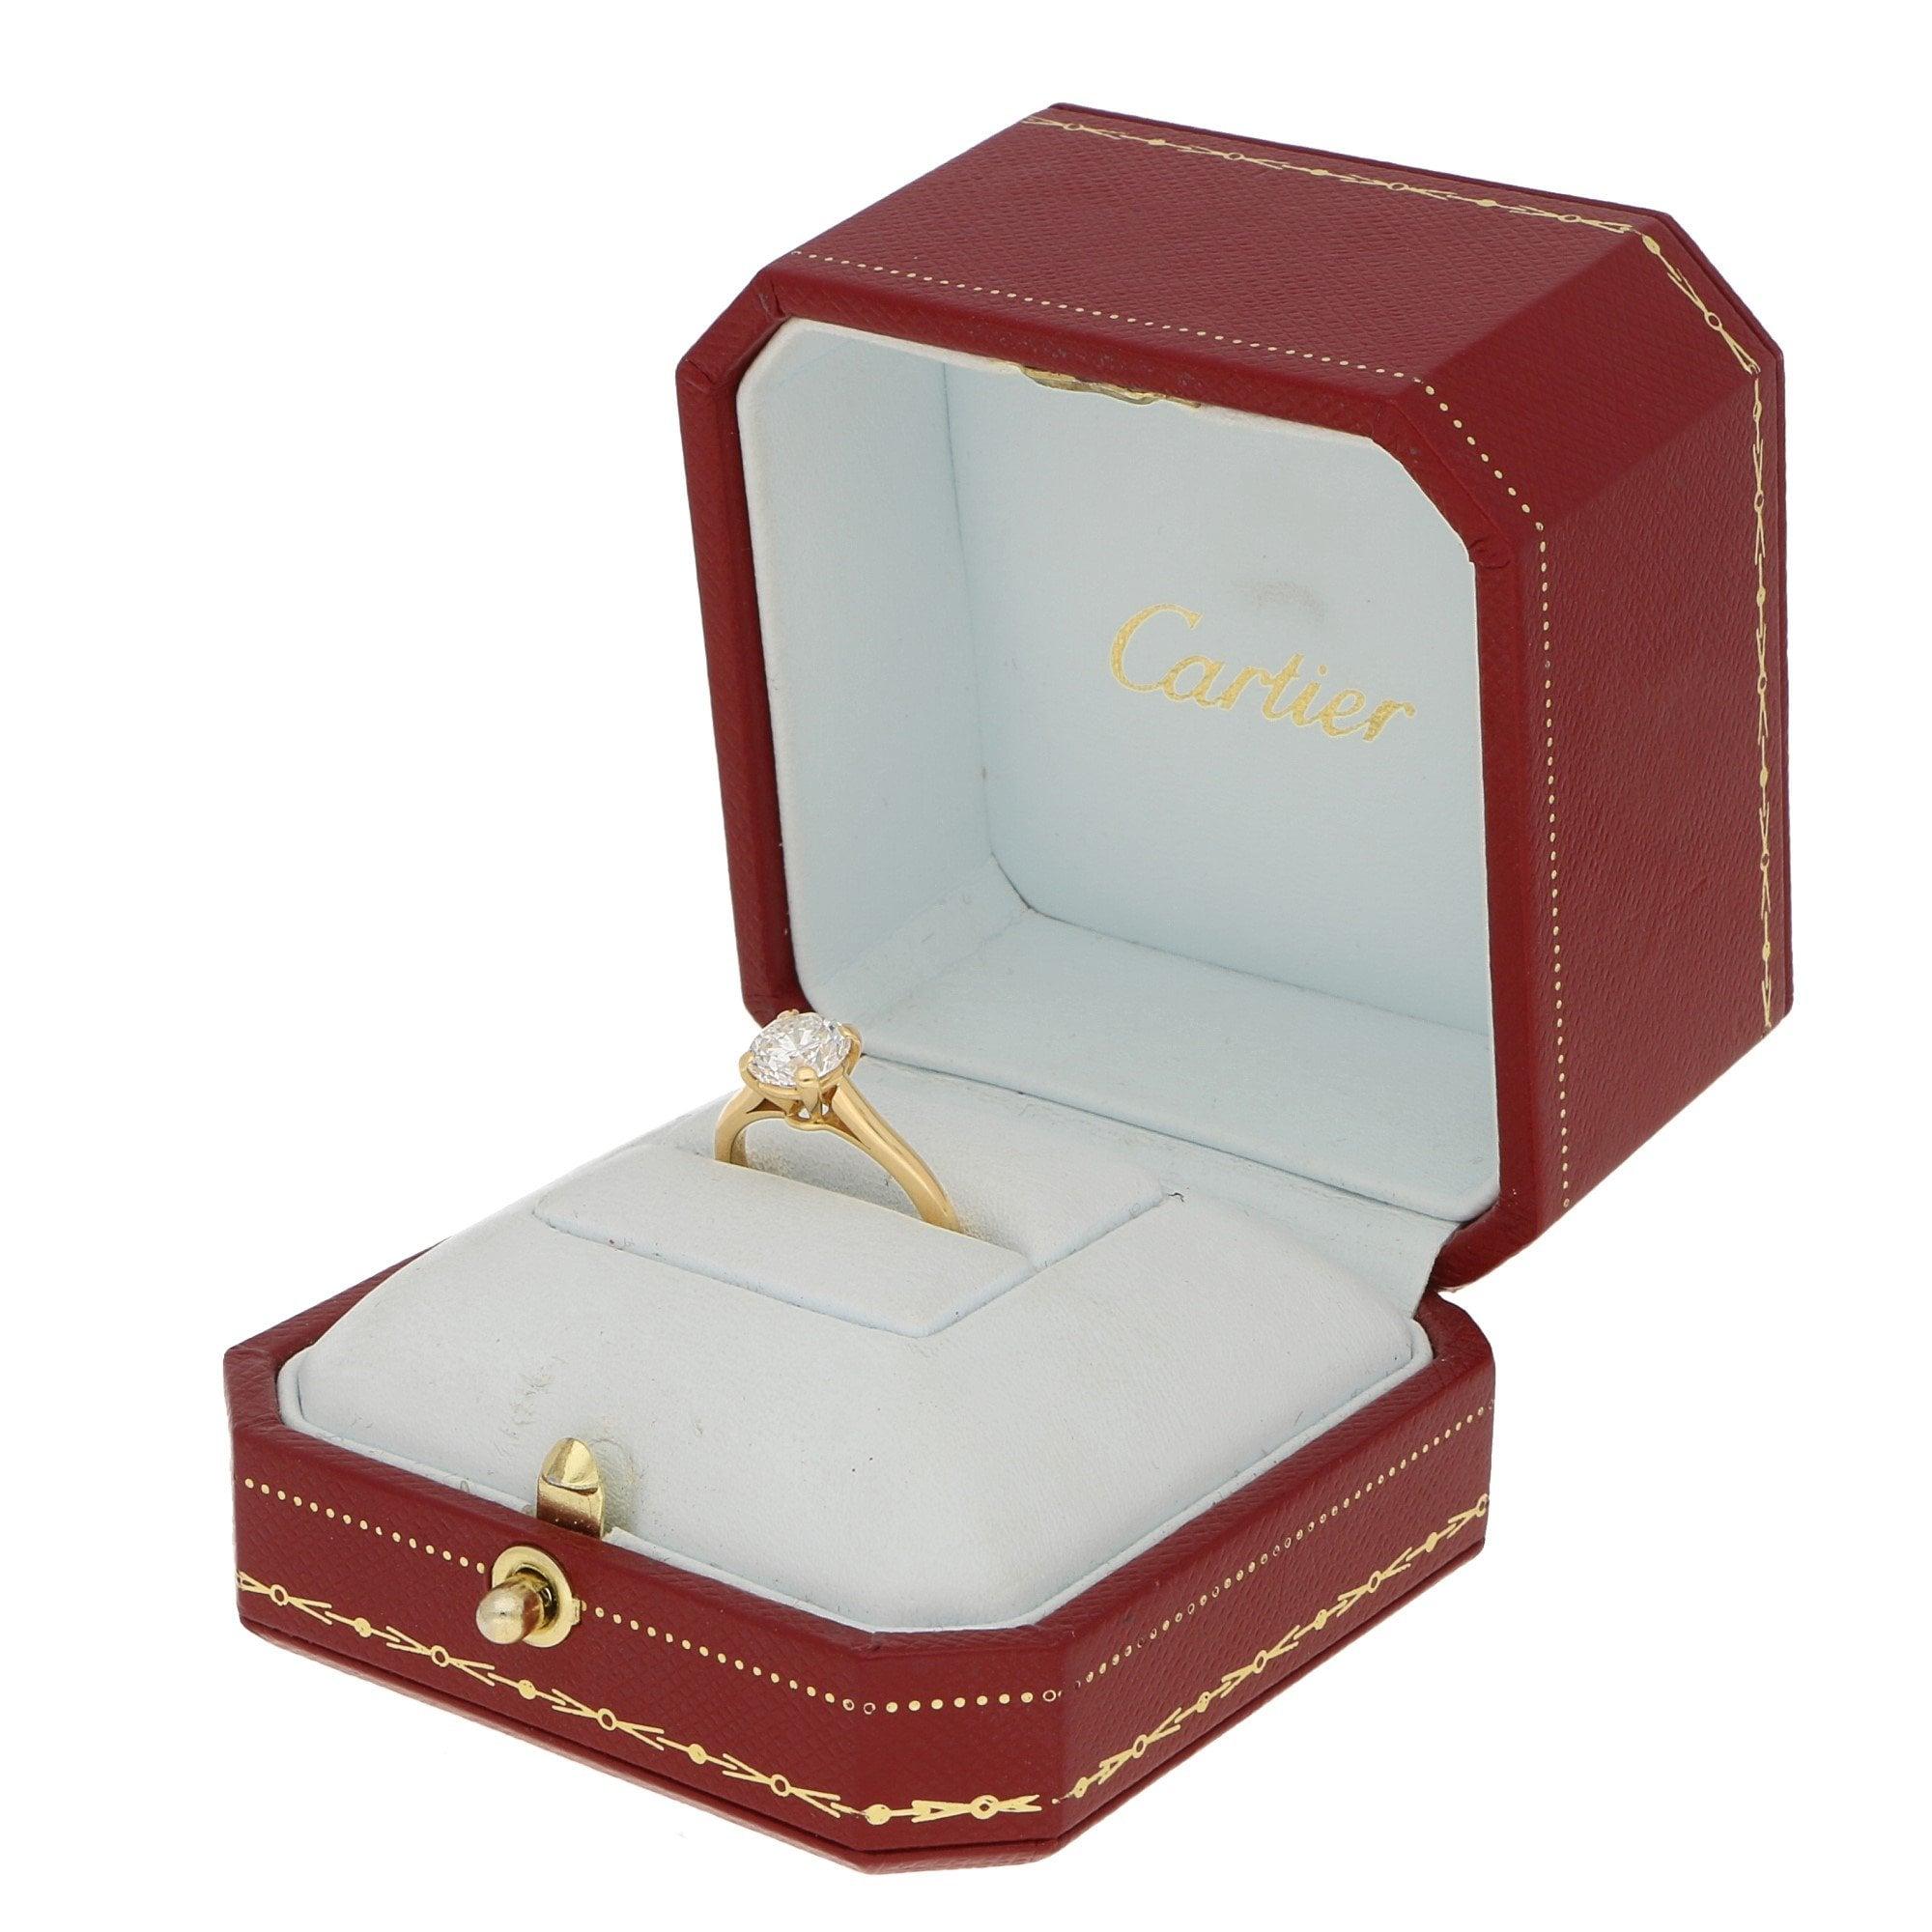 Women's or Men's Cartier Certified 1.25 Carat Solitaire Engagement Ring Set in 18 Karat Gold